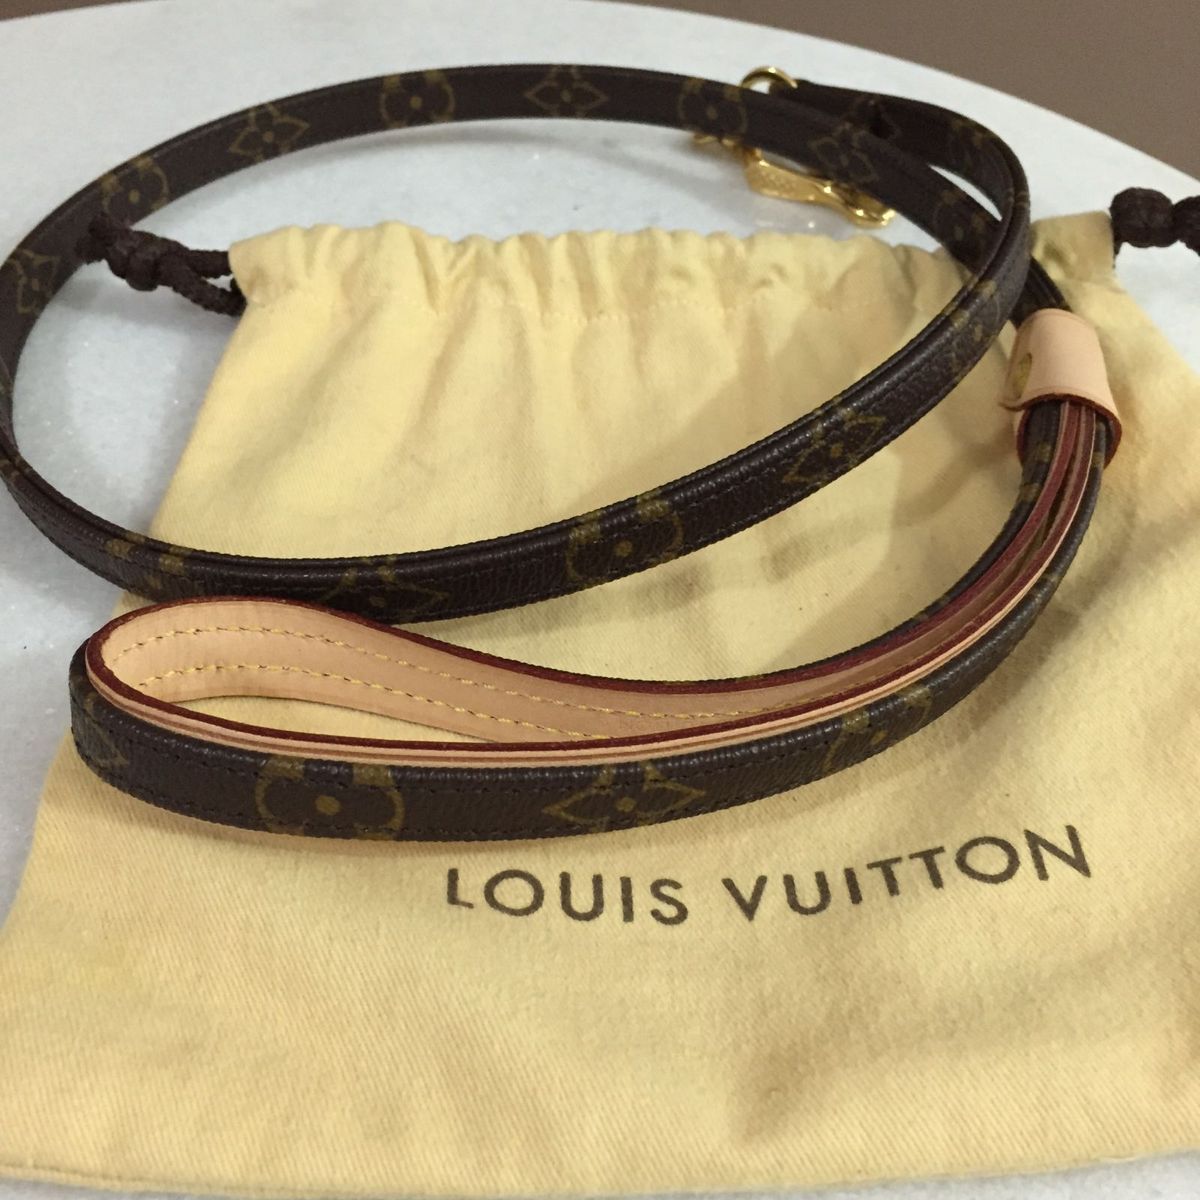 Preços baixos em Coleiras para Cães Louis Vuitton